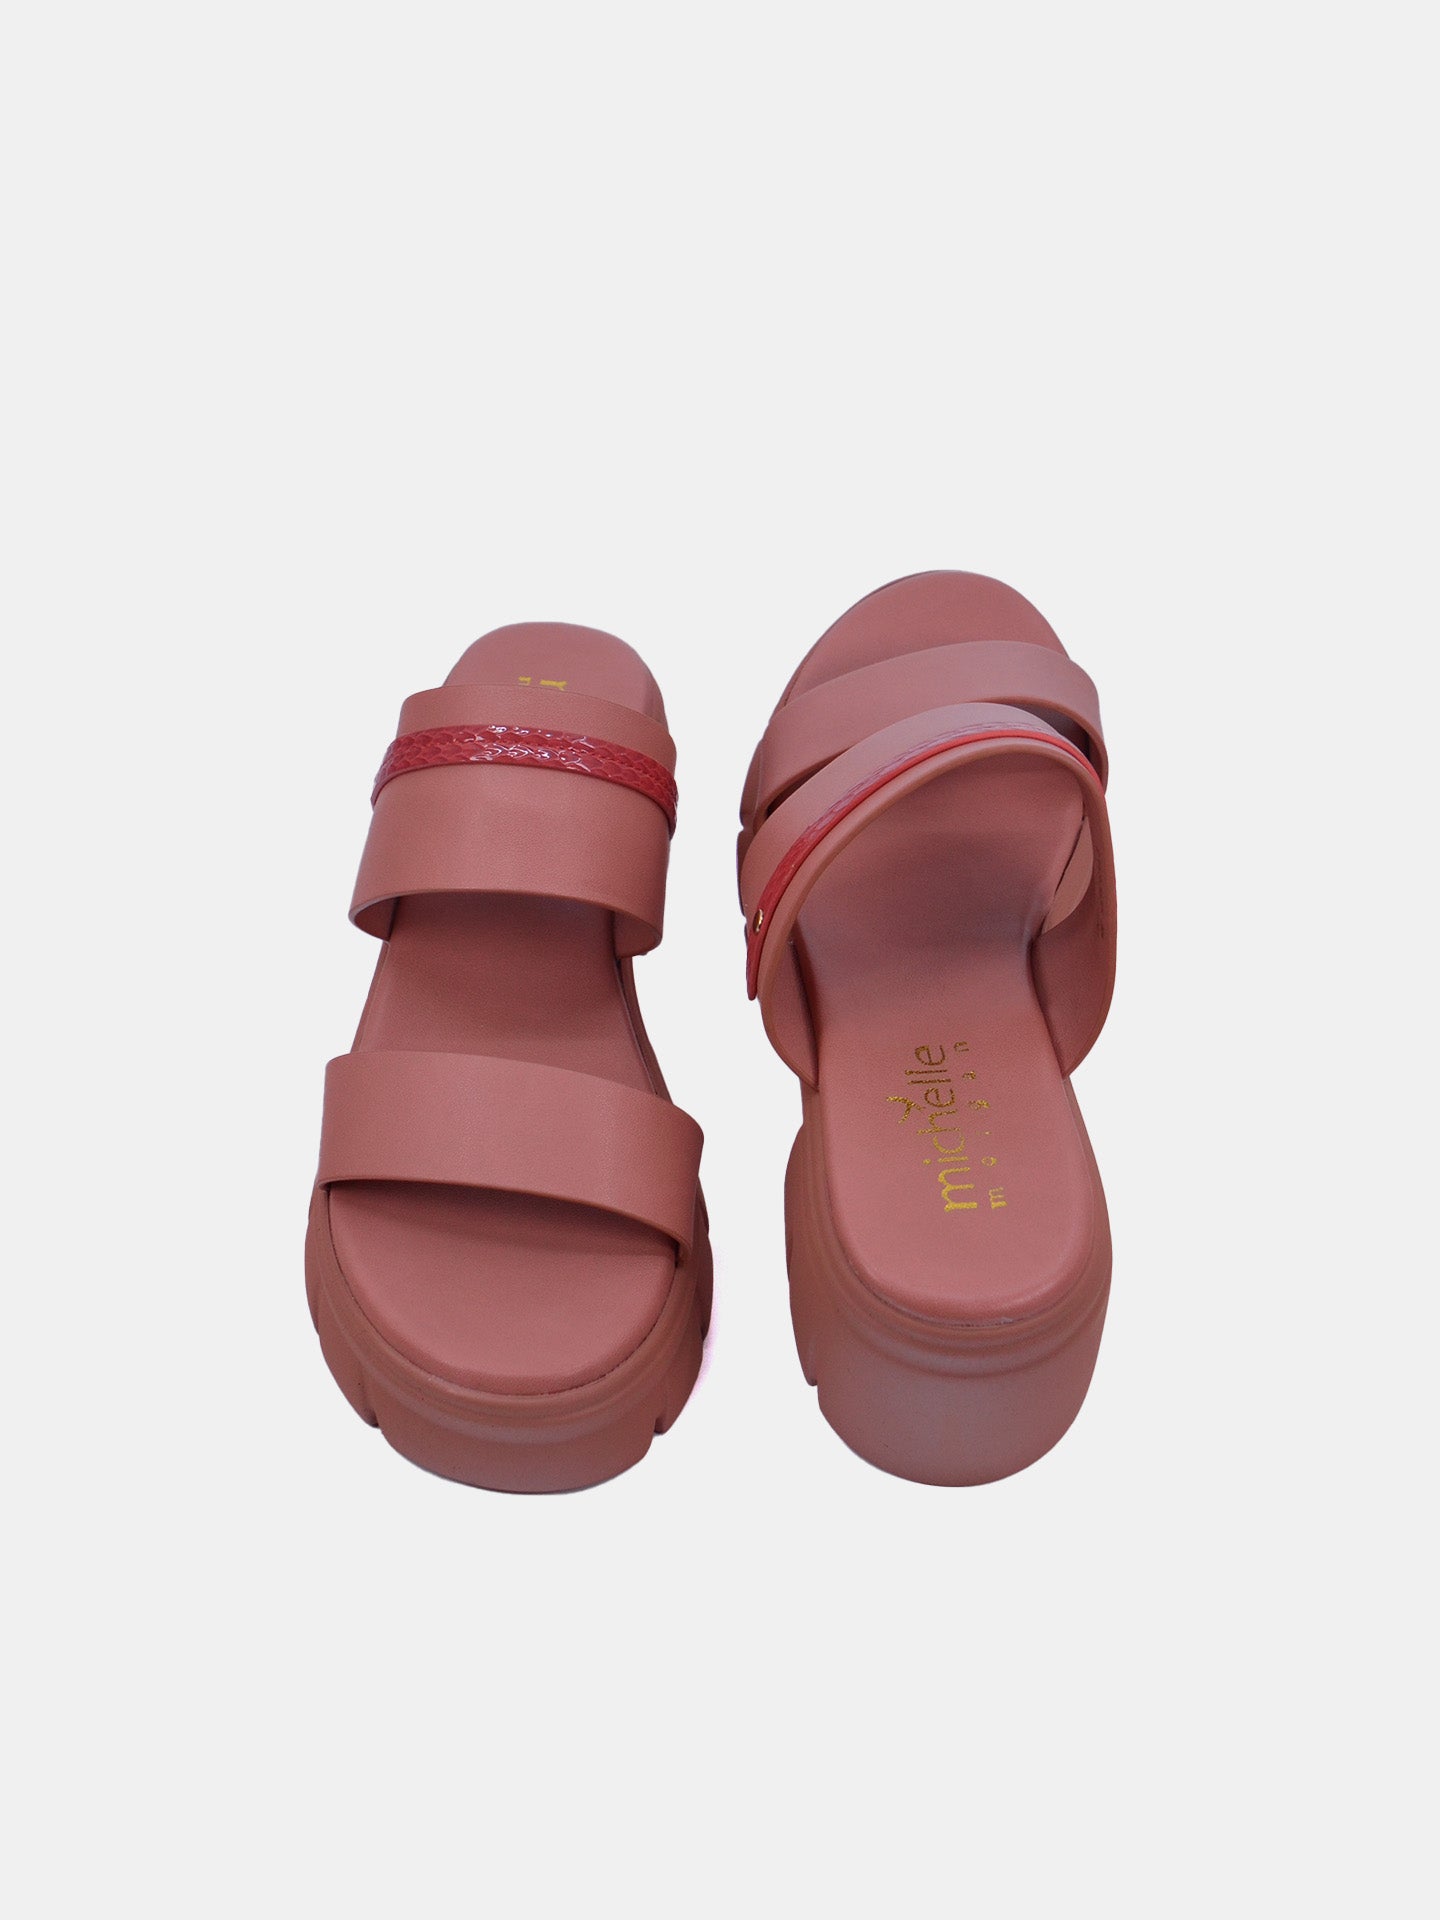 Michelle Morgan 214RJ635 Women's Sandals #color_Pink